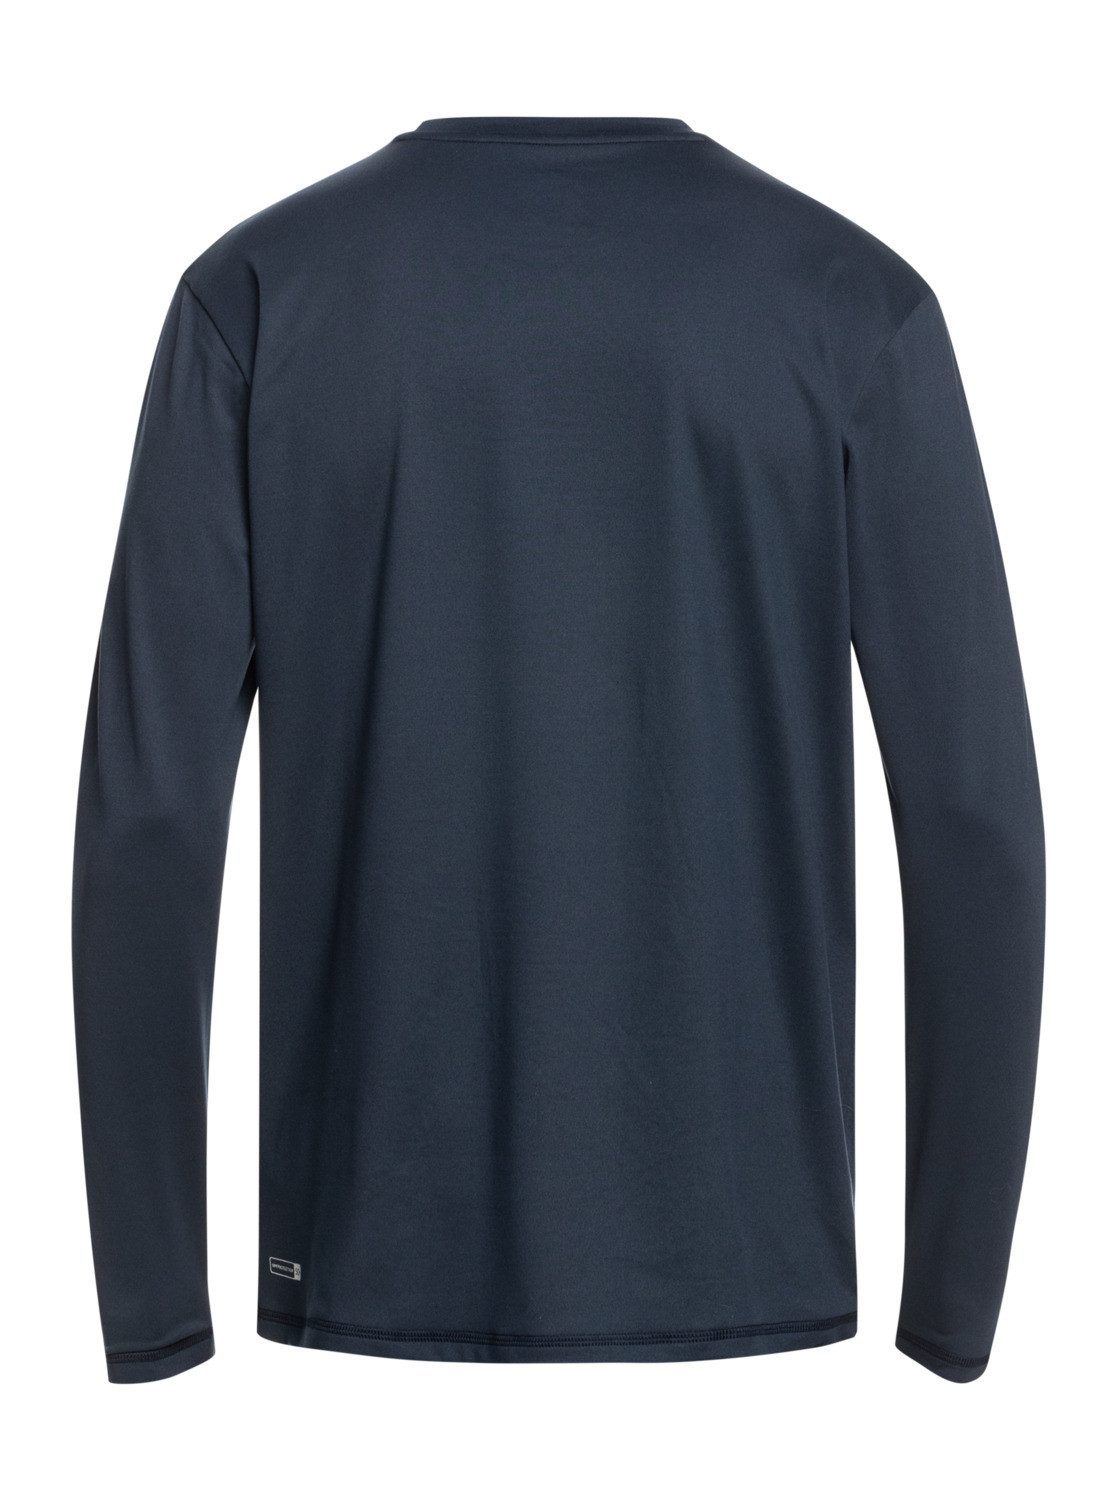 Quiksilver Neopren Shirt Solid Navy Streak Blazer